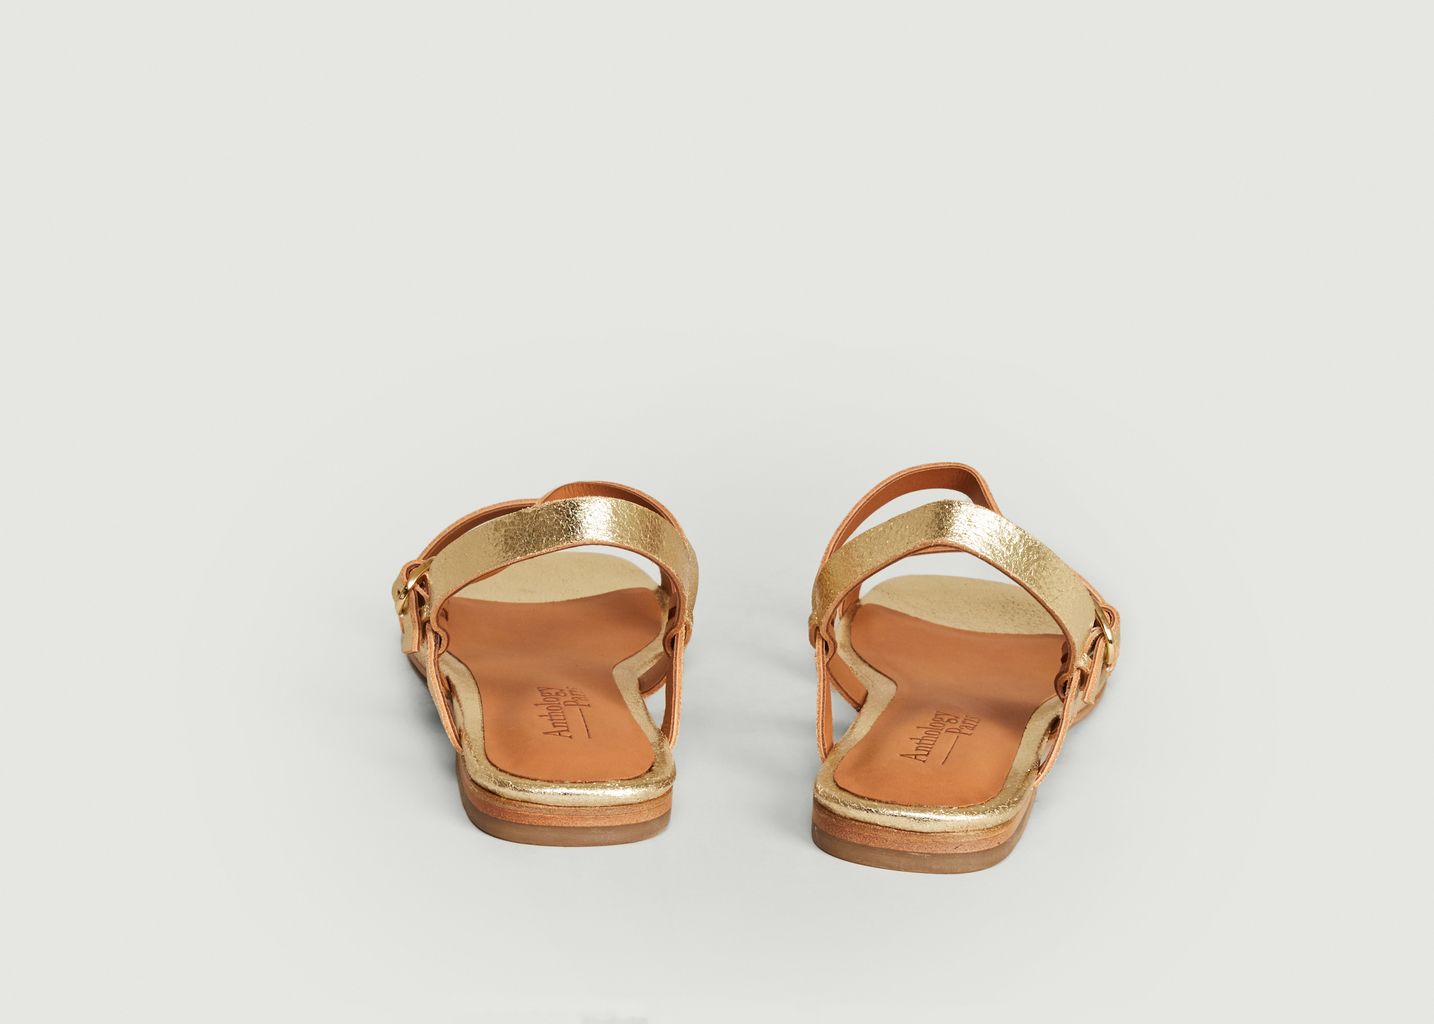 Raha laminated leather sandals - Anthology Paris